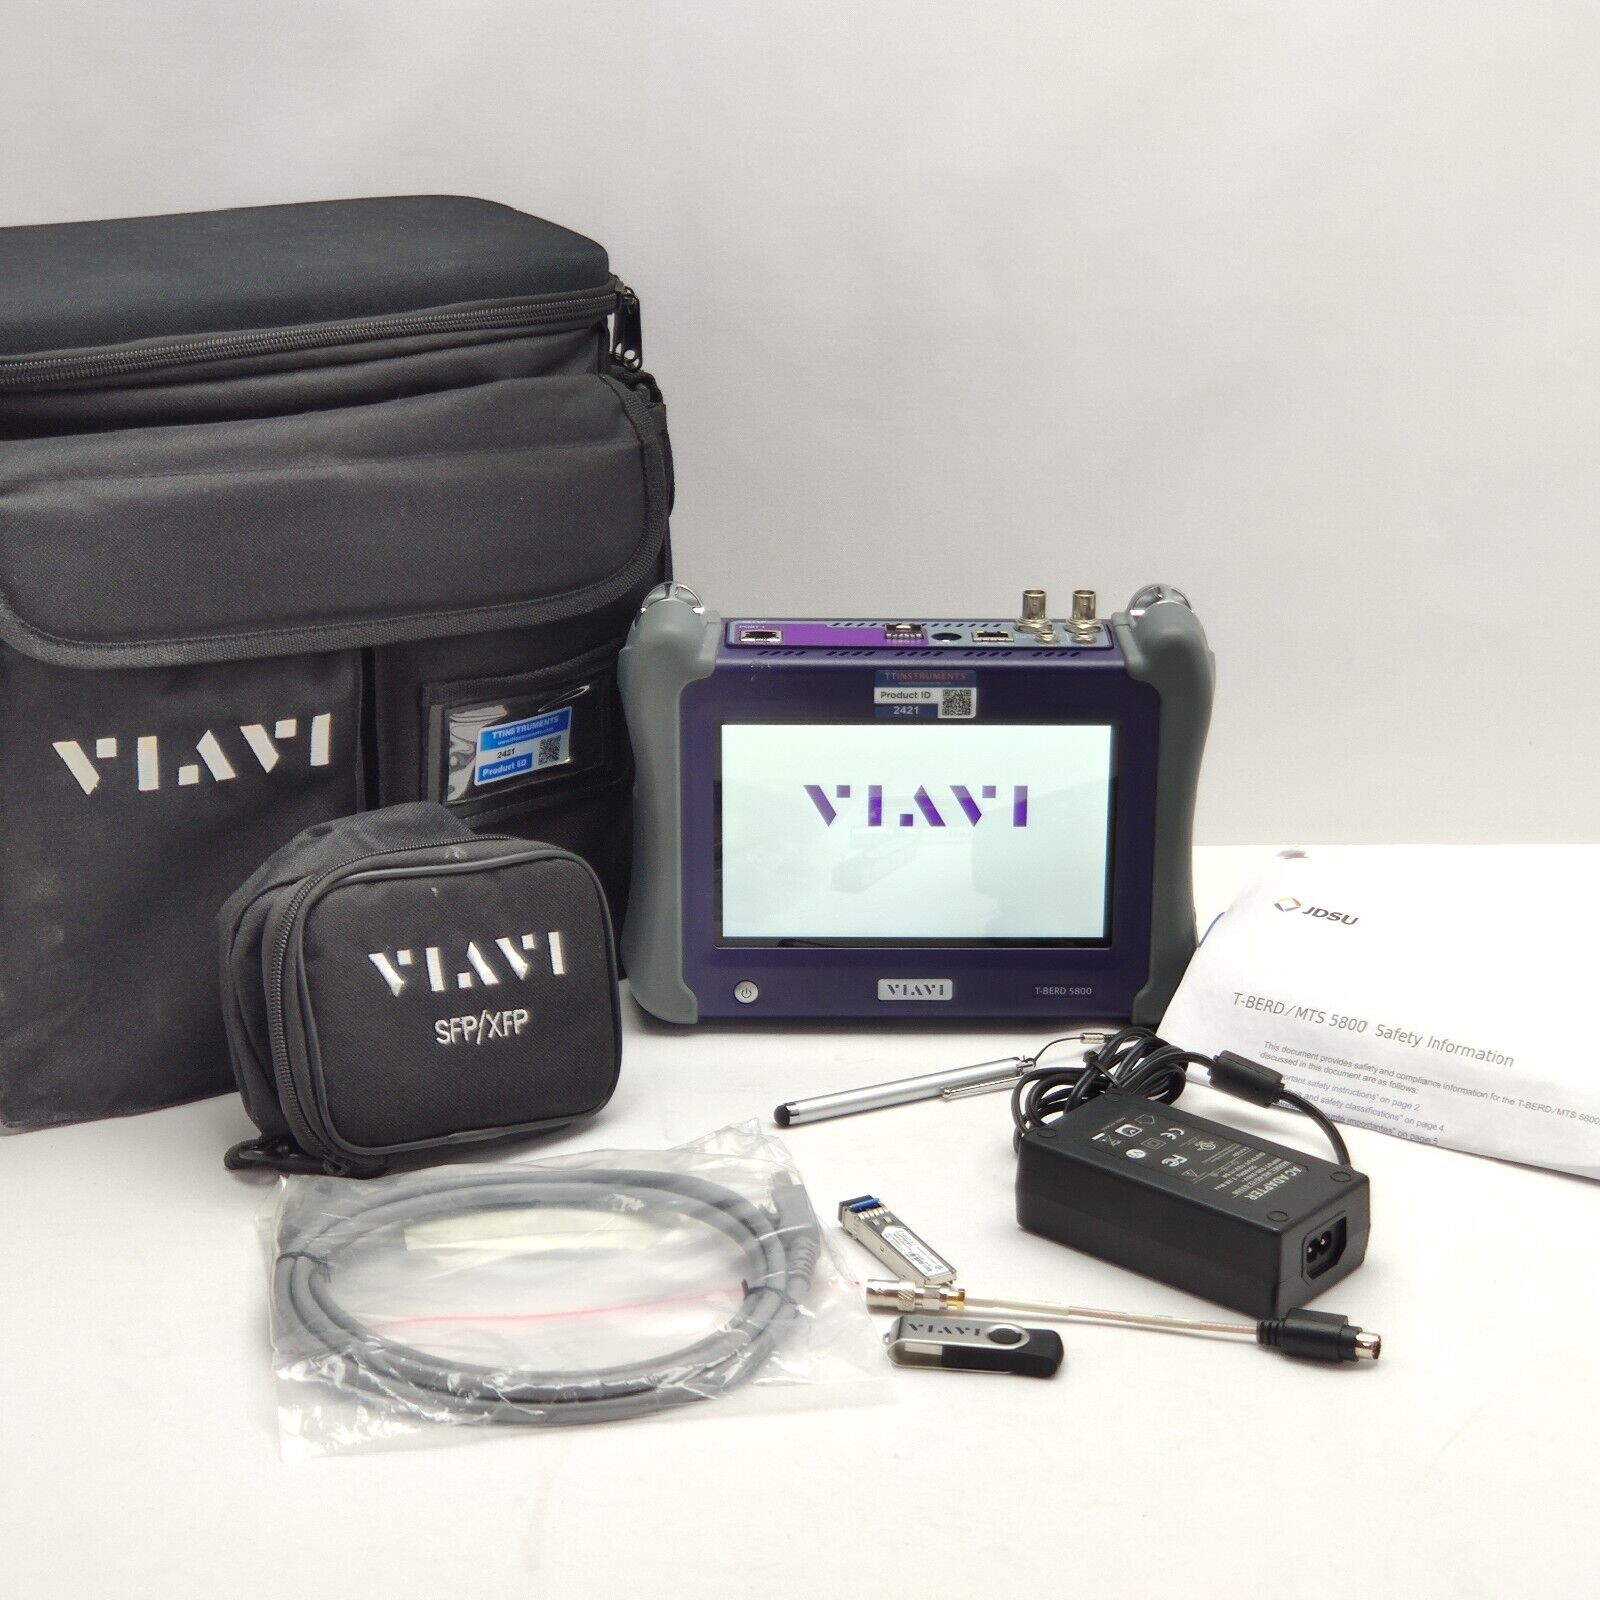 Viavi JDSU MTS T-BERD 5800 V2 w/ 5811P Ethernet Tester 1GigE Optical Electrical